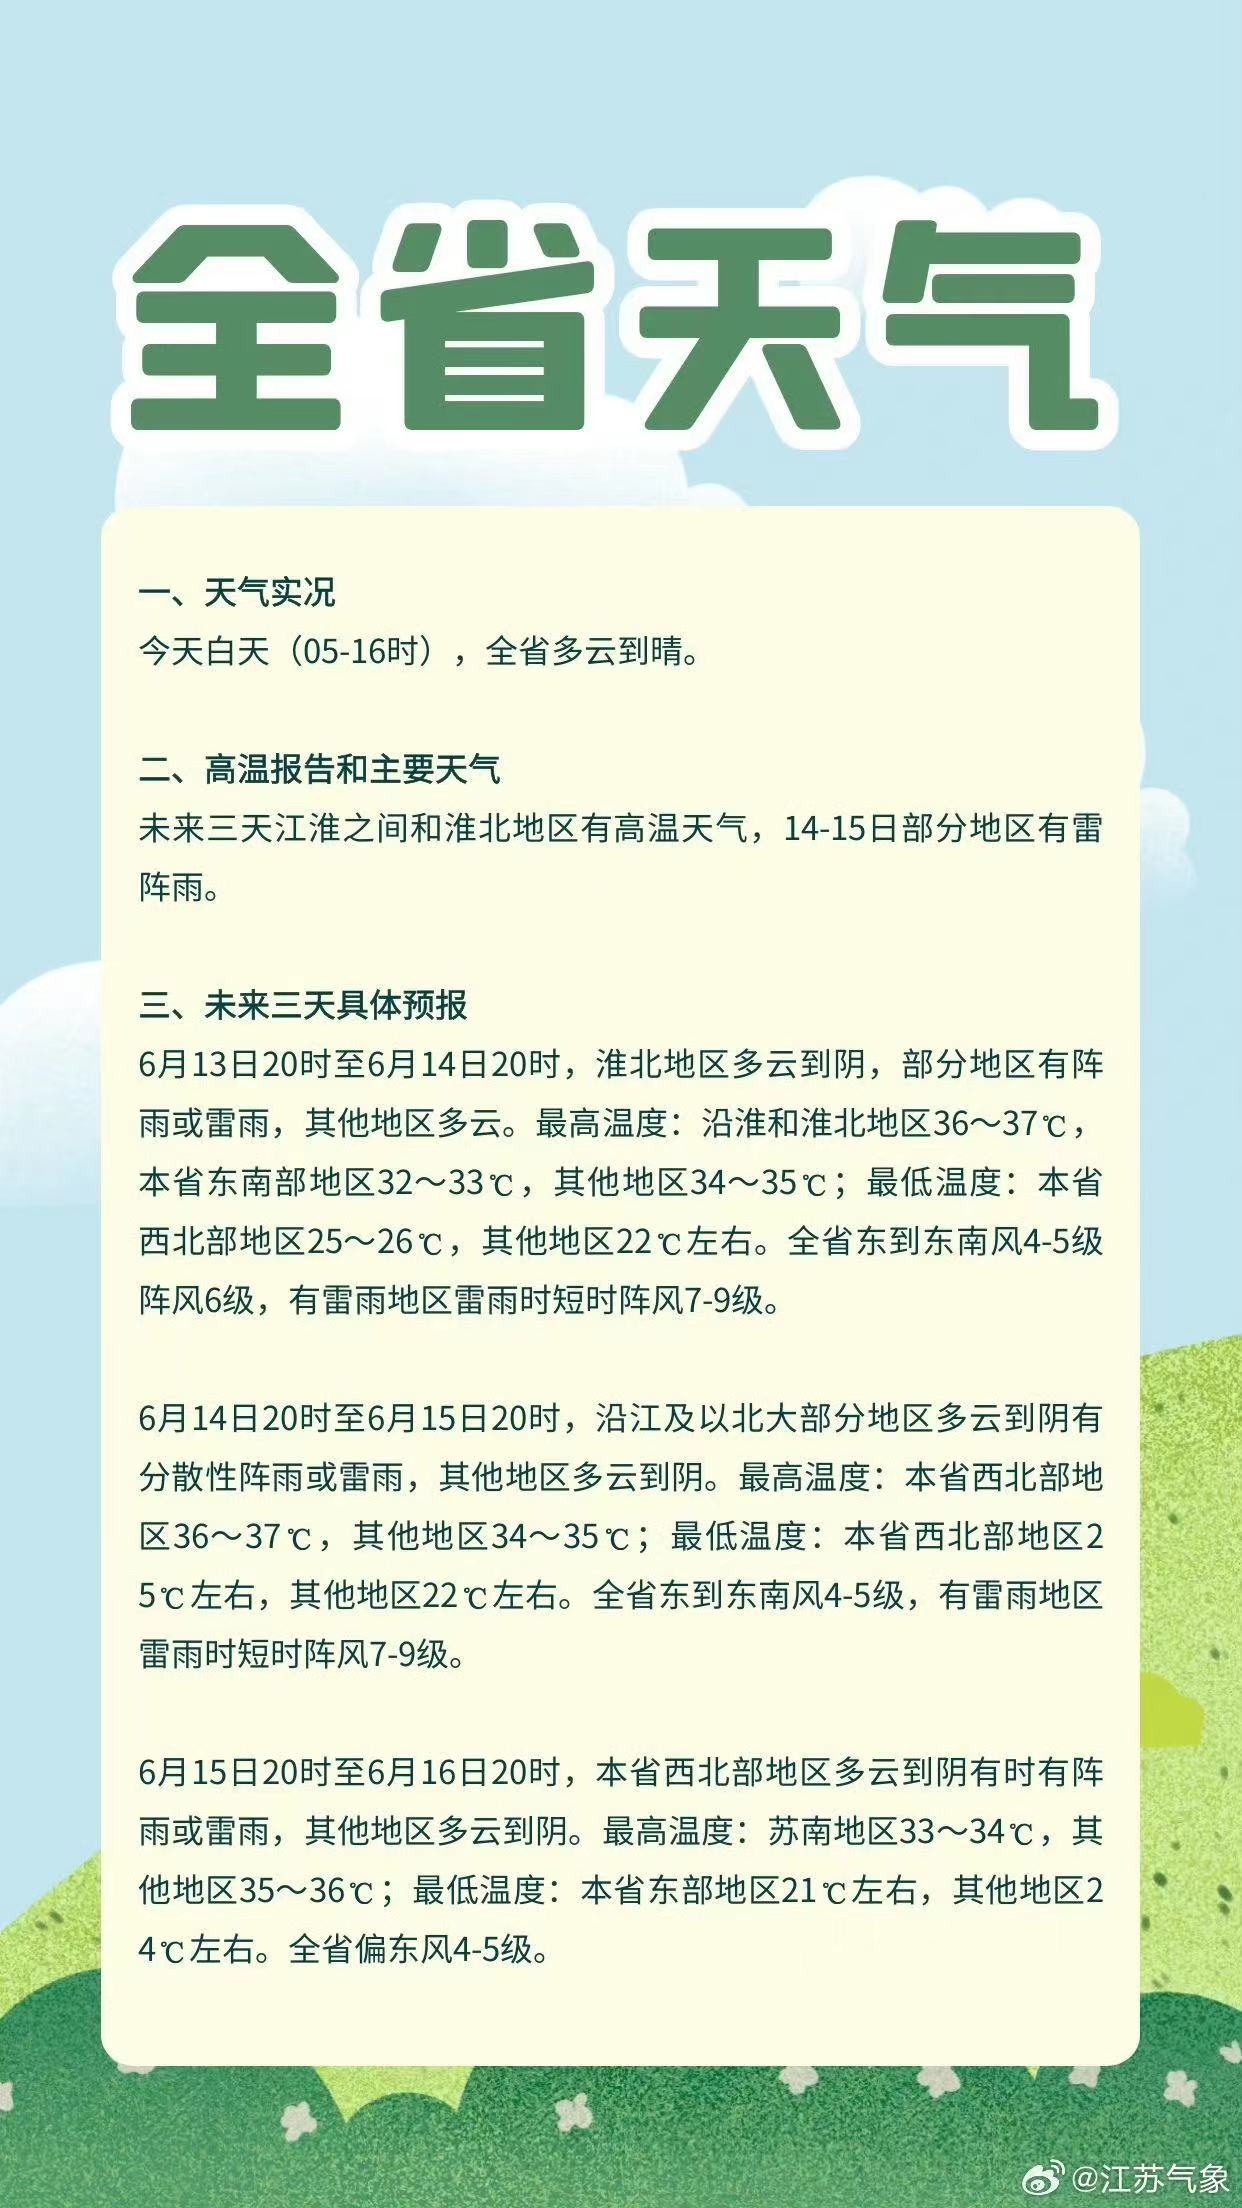 江苏变更发布高温黄色预警,淮北地区出现气象干旱